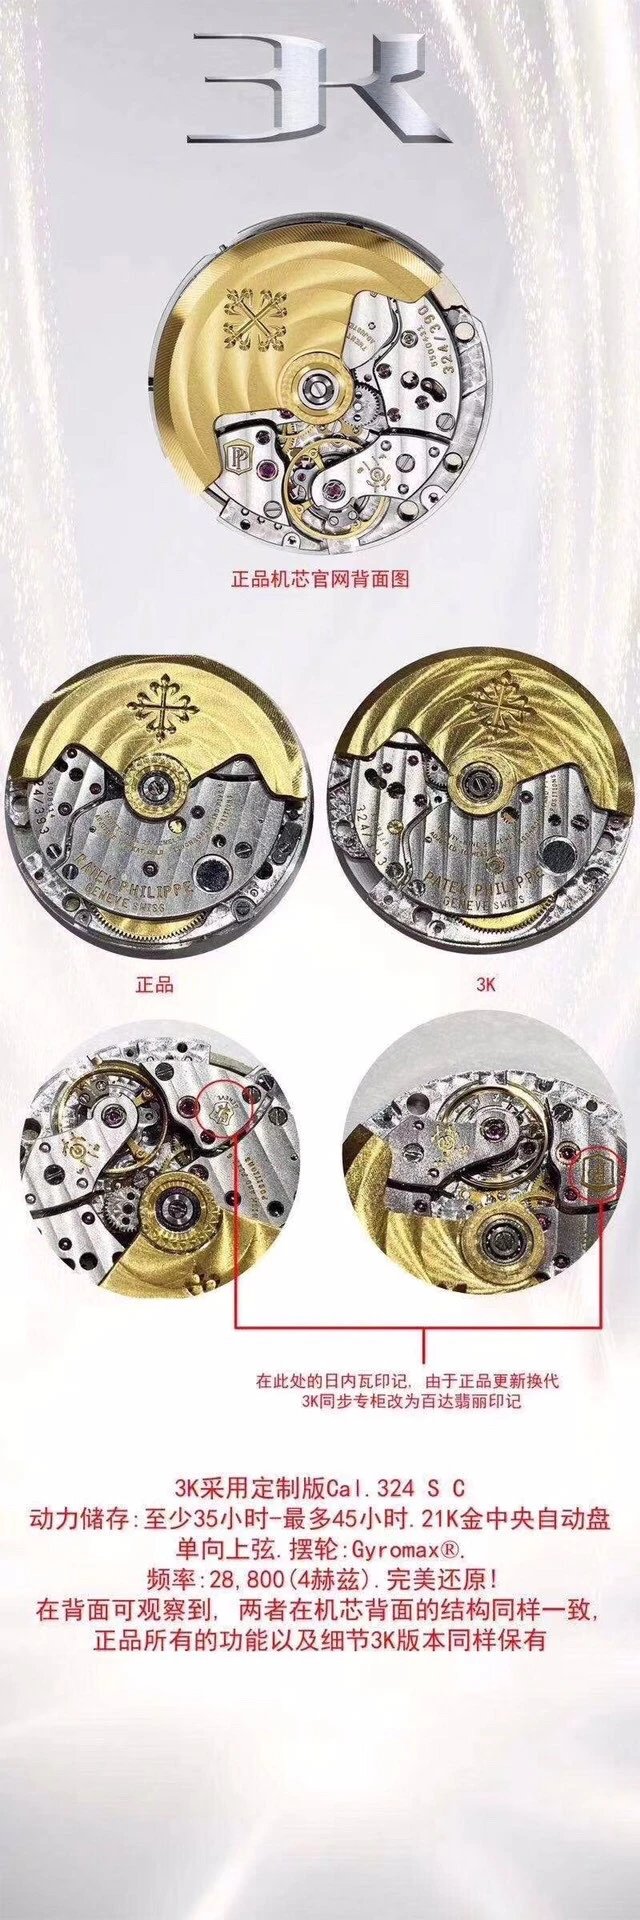 最高版本 秒天神作3K廠百達翡麗手雷5167A-001腕錶 媲美正品的副本￥4380-高仿百達翡麗